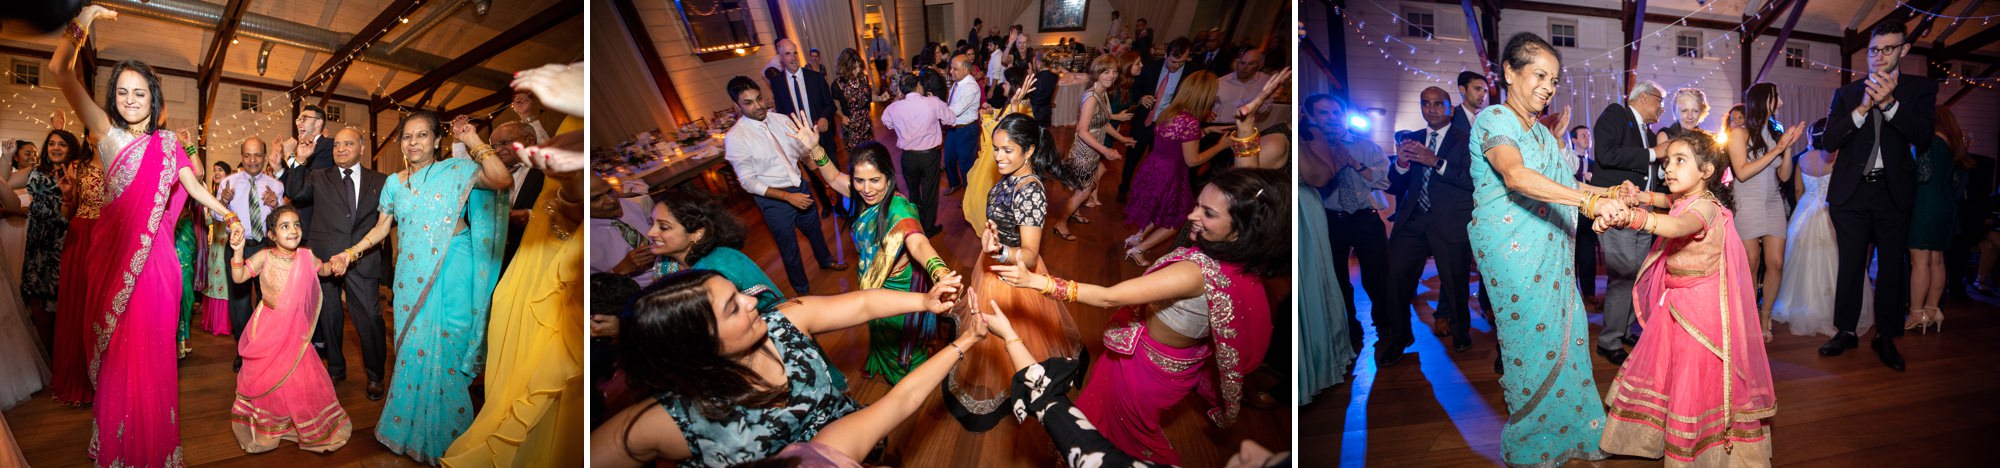 Indian Wedding Photographers Charlottesville Virginia